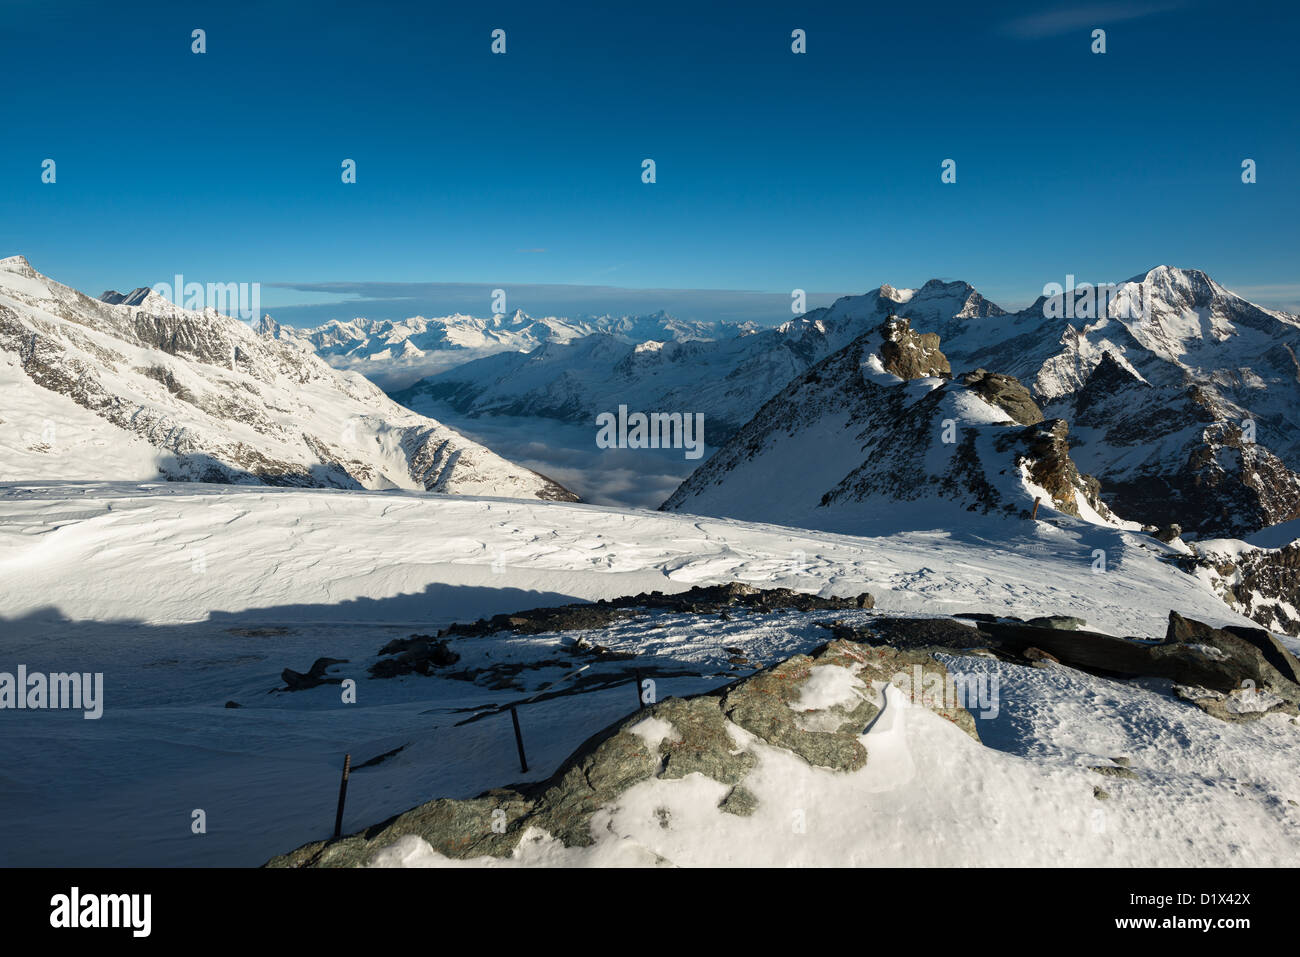 Panoramic view from Mittelallalin, Saas Fee, Valais, Switzerland Stock Photo